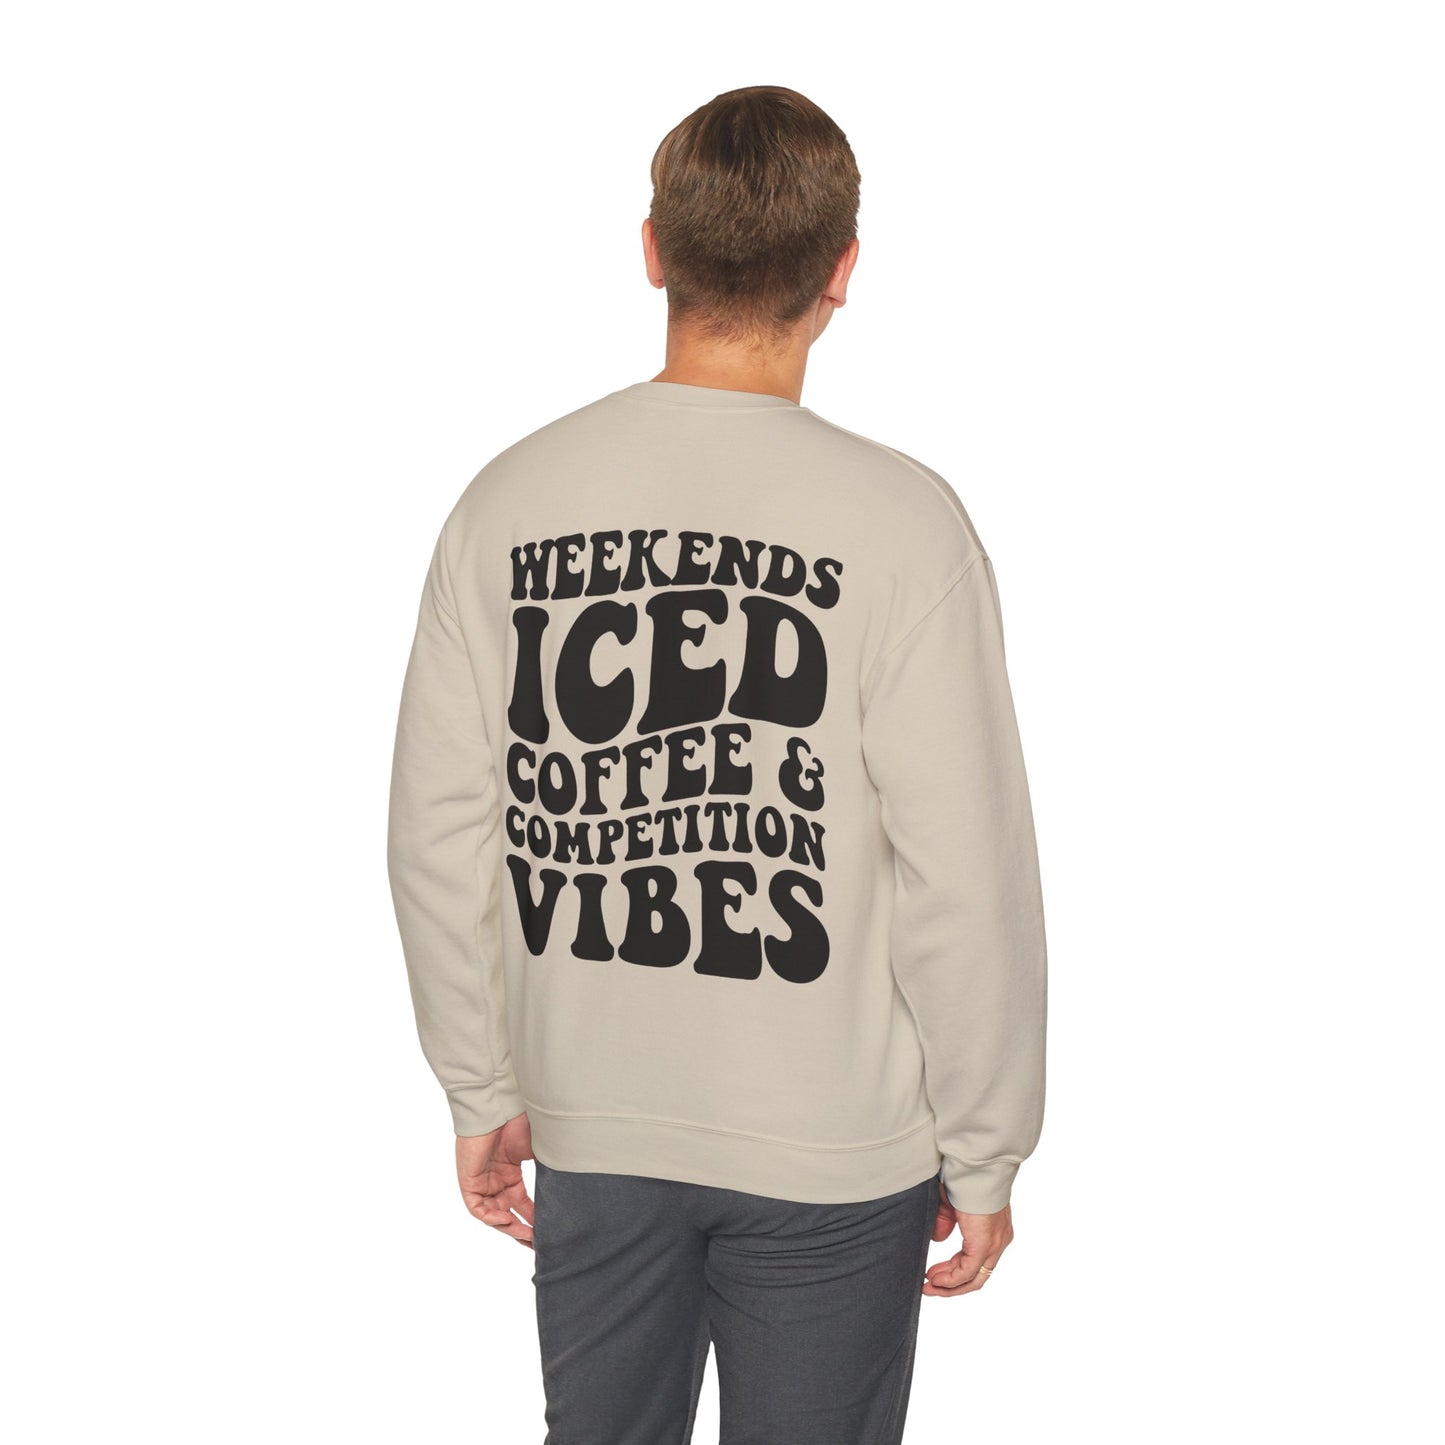 Weekends Ice Coffee Comp Vibes - Crewneck Sweatshirt